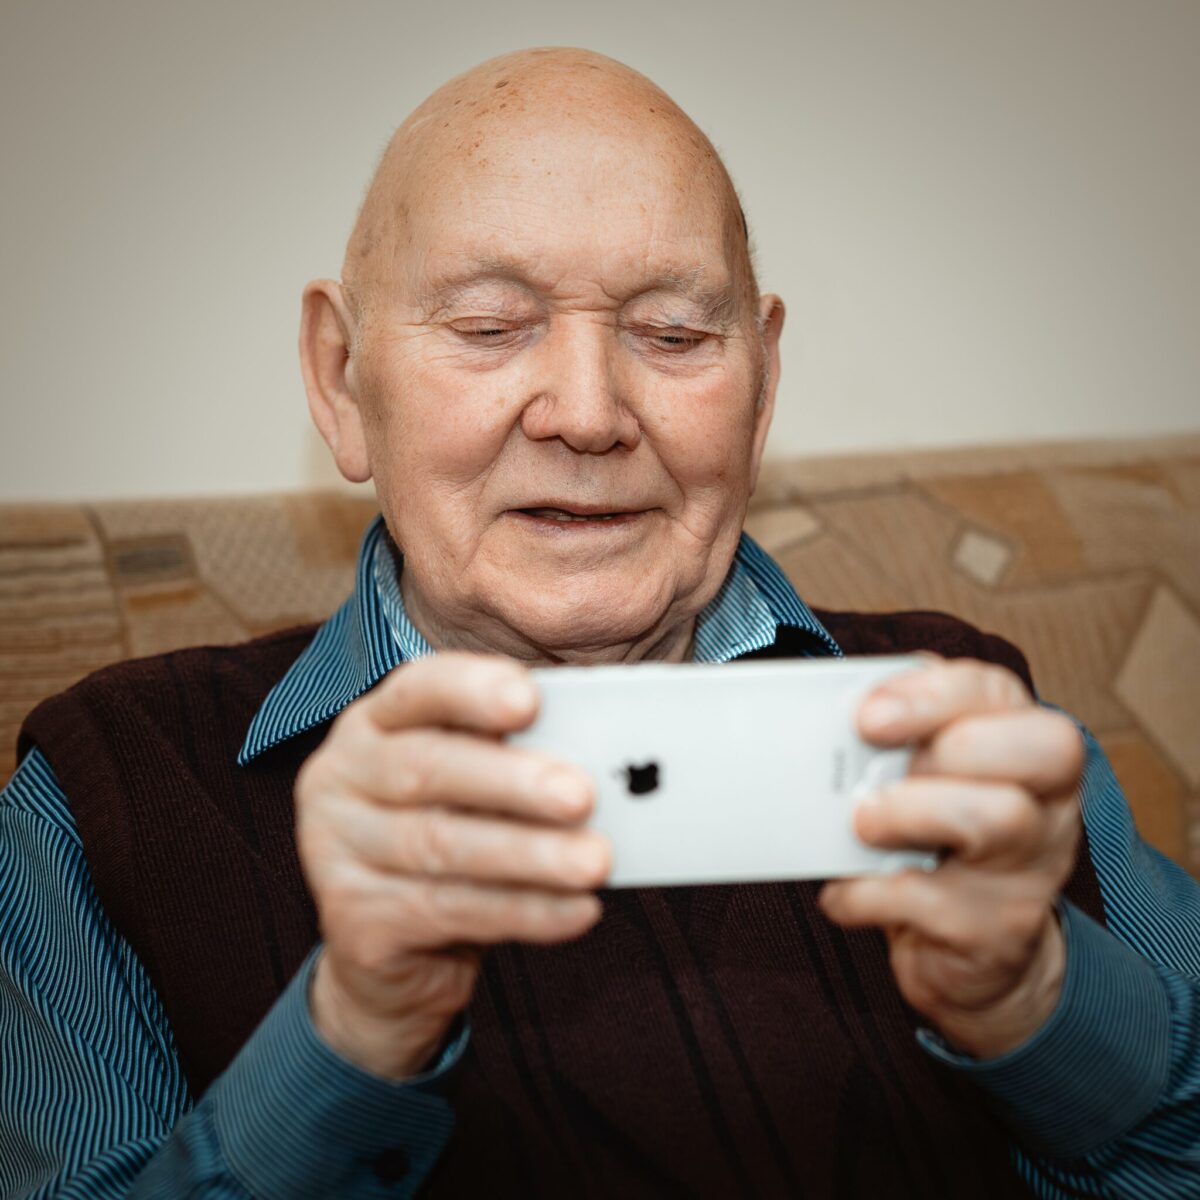 A senior man using a phone